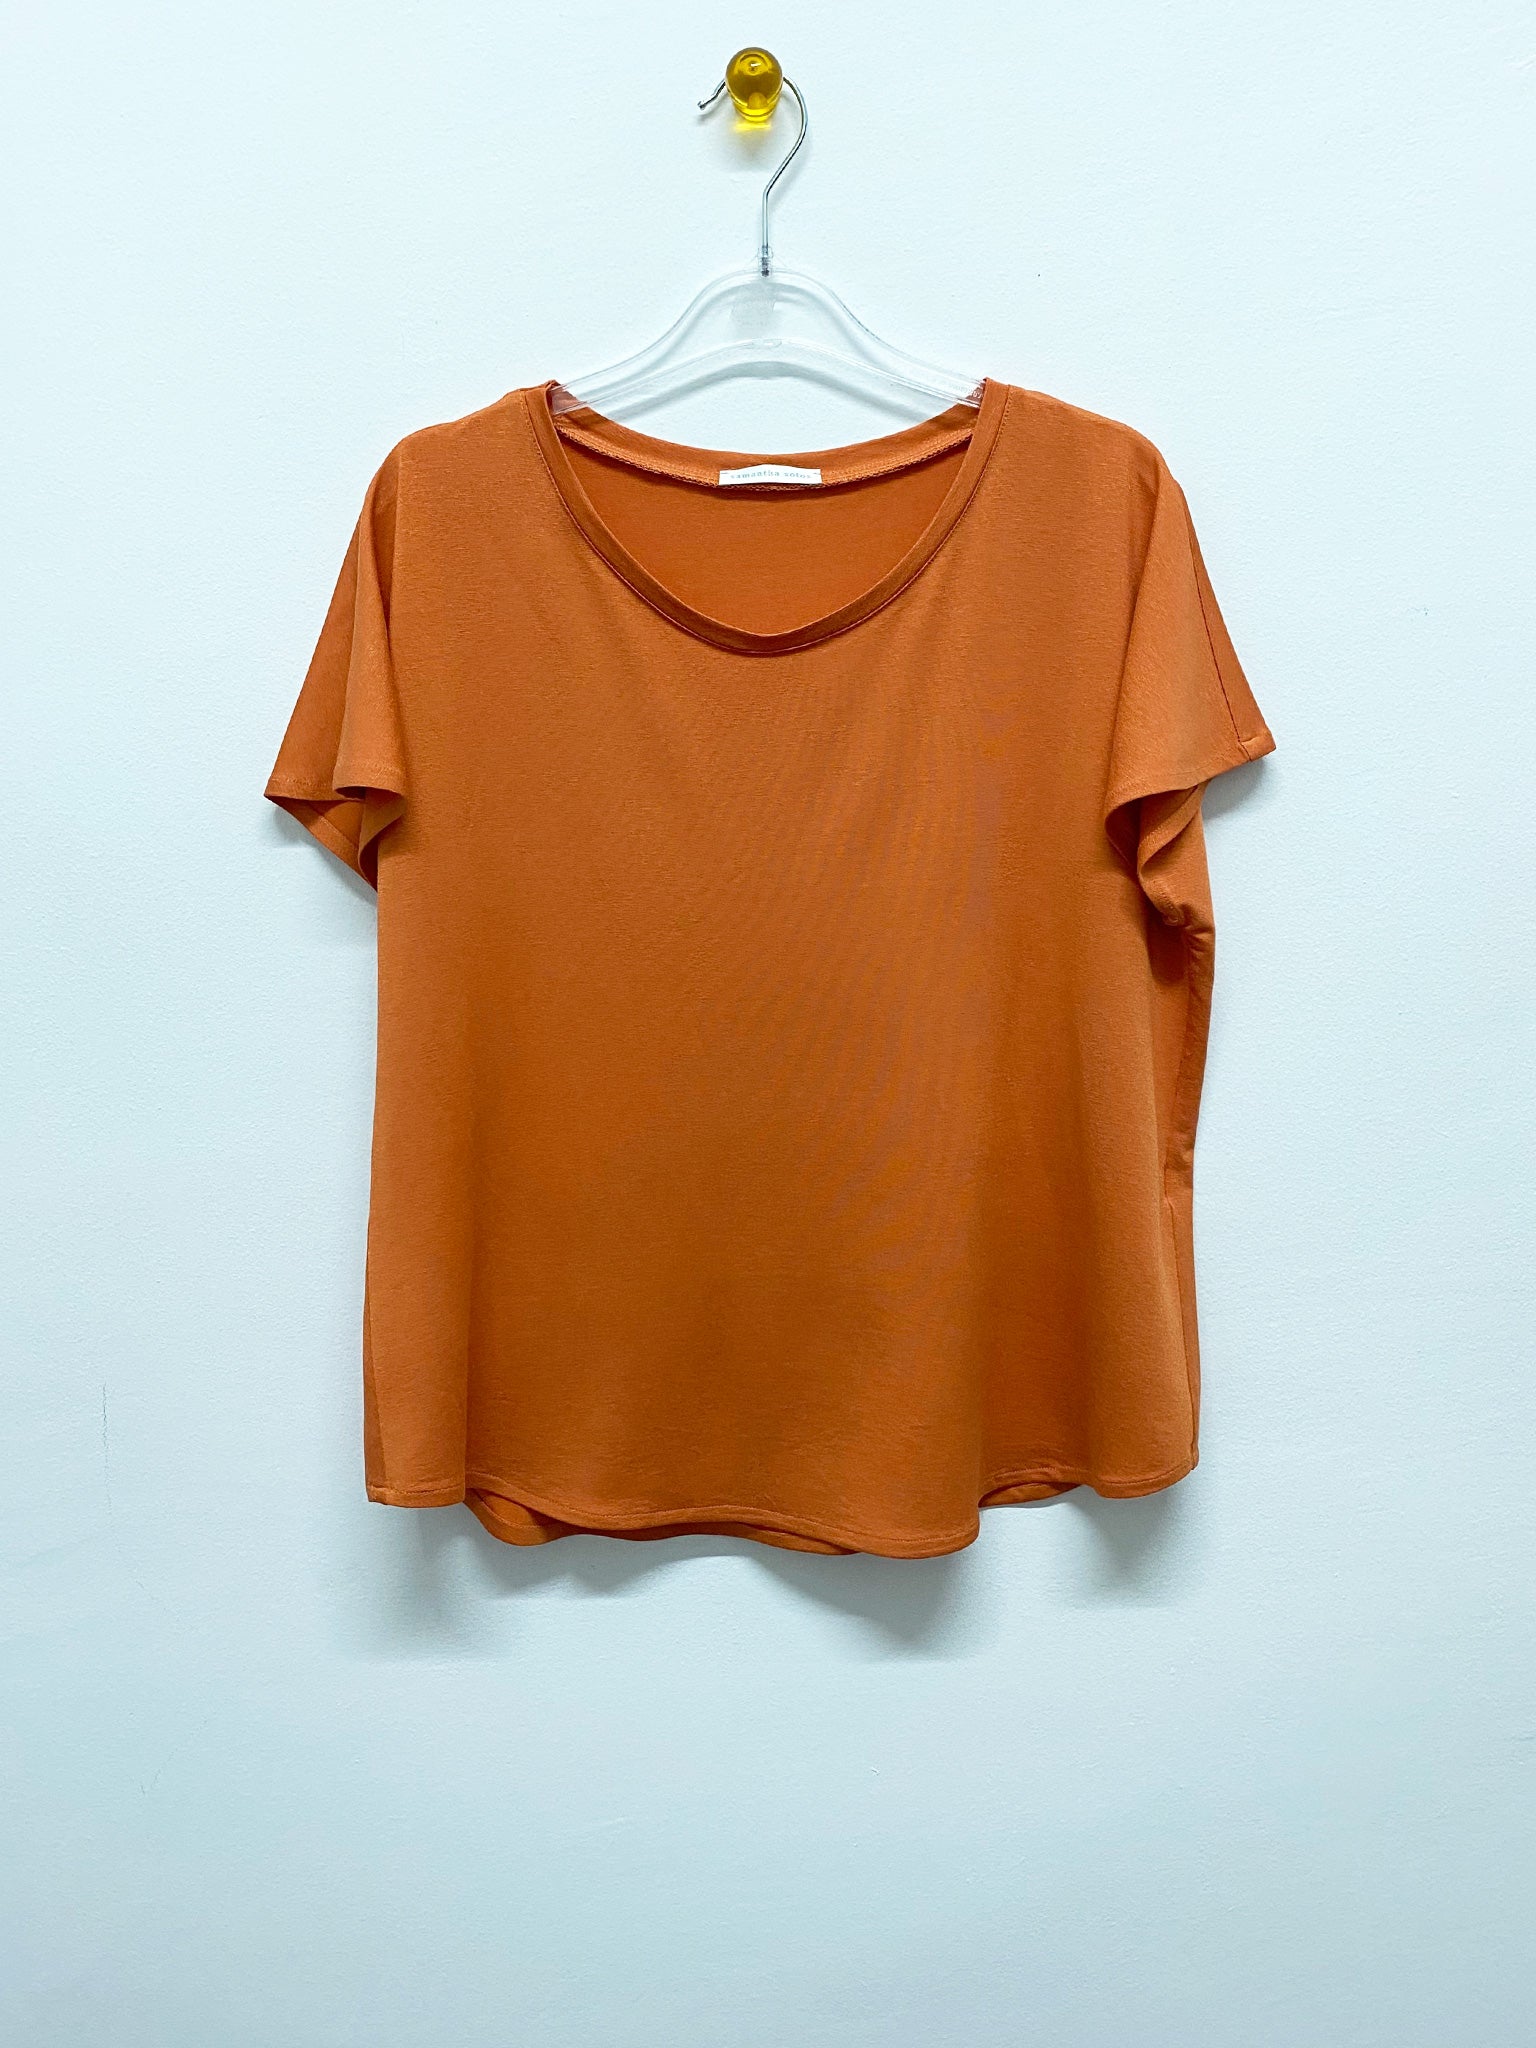 Orange Jersey T-Shirt